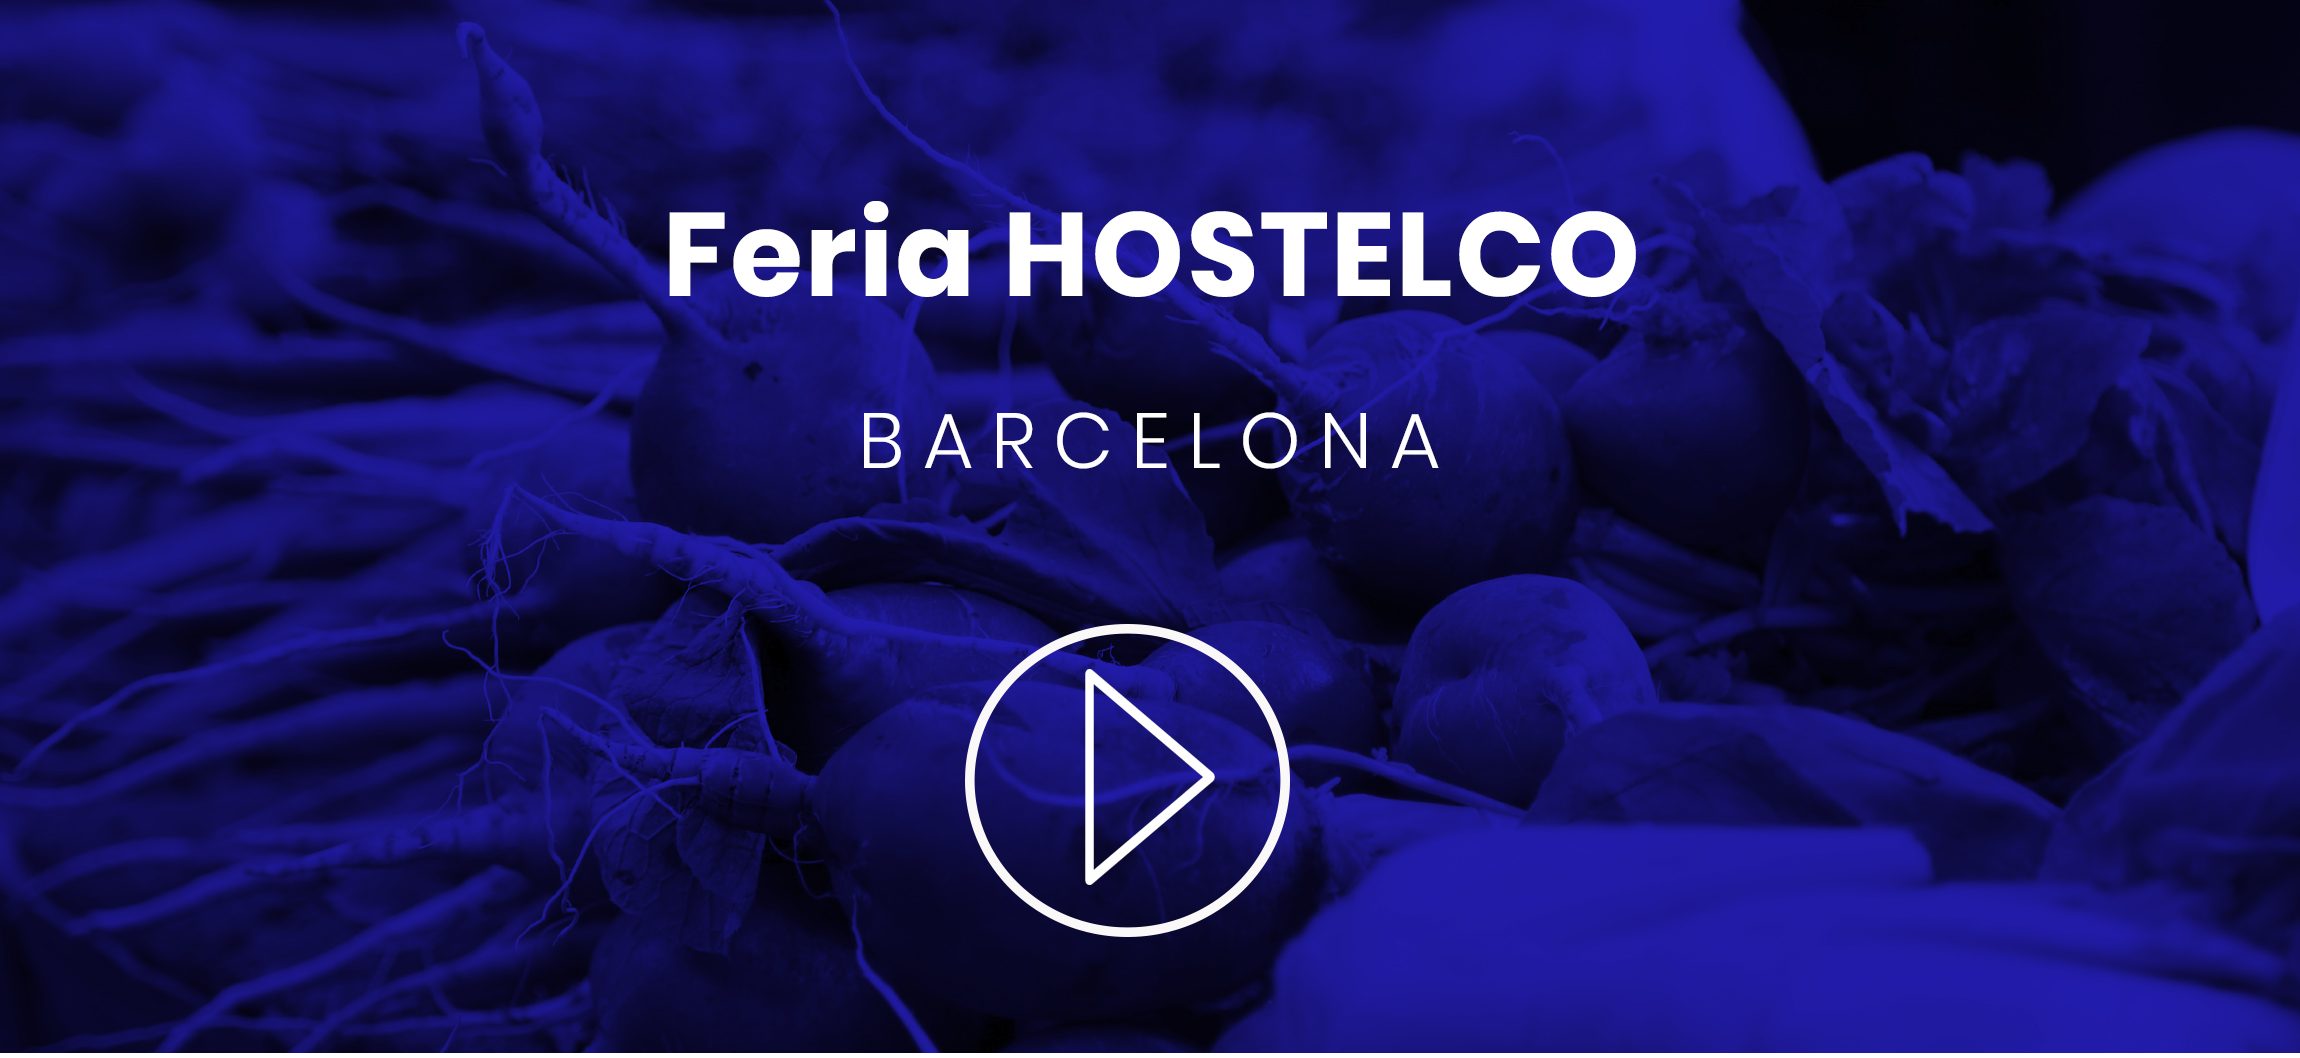 Video Resumen participación Repagas Feria Hostelco Barcelona